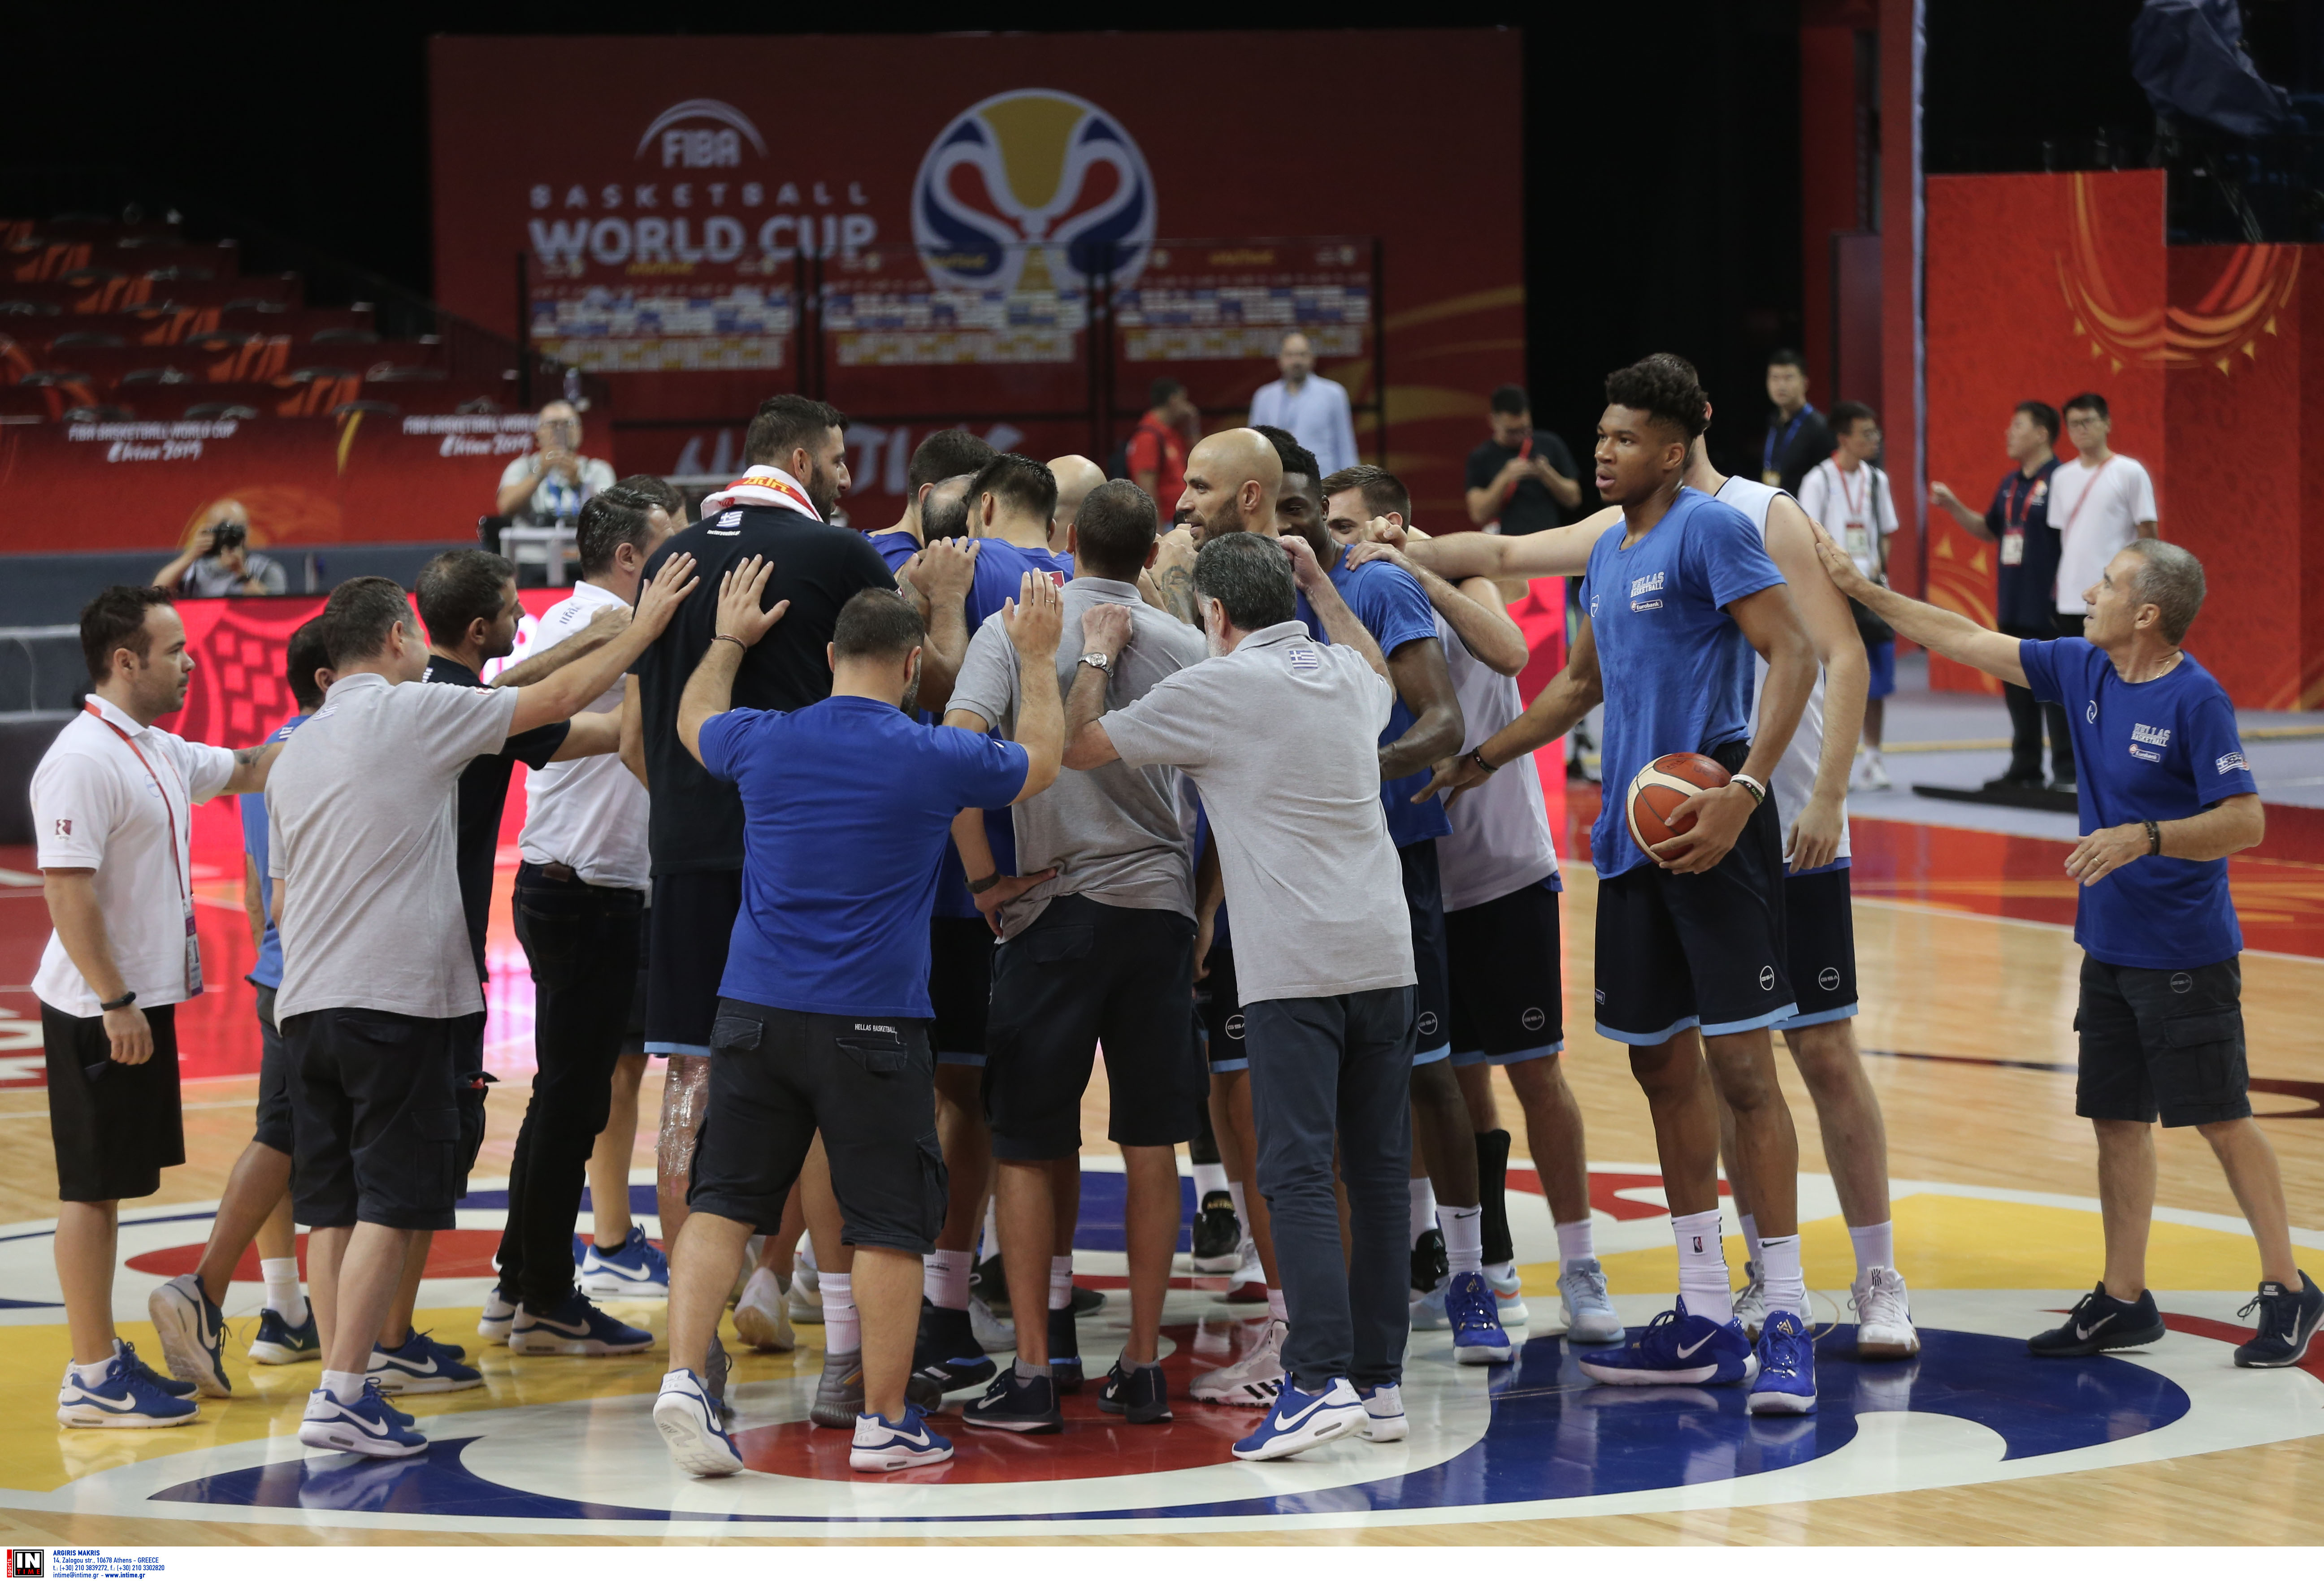 Μουντομπάσκετ 2019: Έτοιμη για “μάχη” η Εθνική Ελλάδας! [pics]